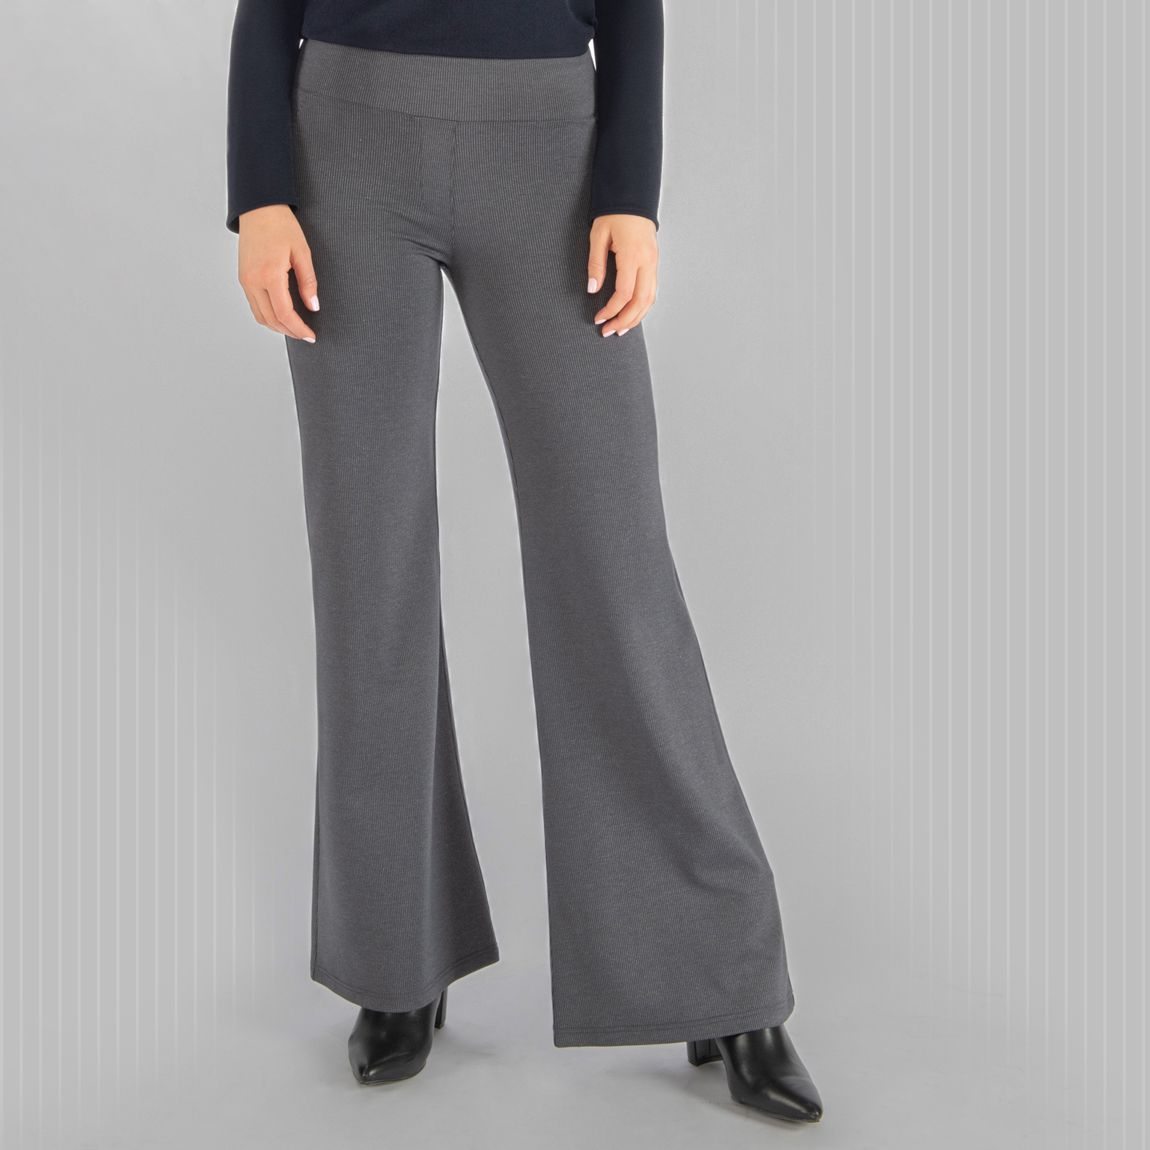 Wide-Leg | Classic Dress Pant Yoga Pants (Silver-Pinstripe)